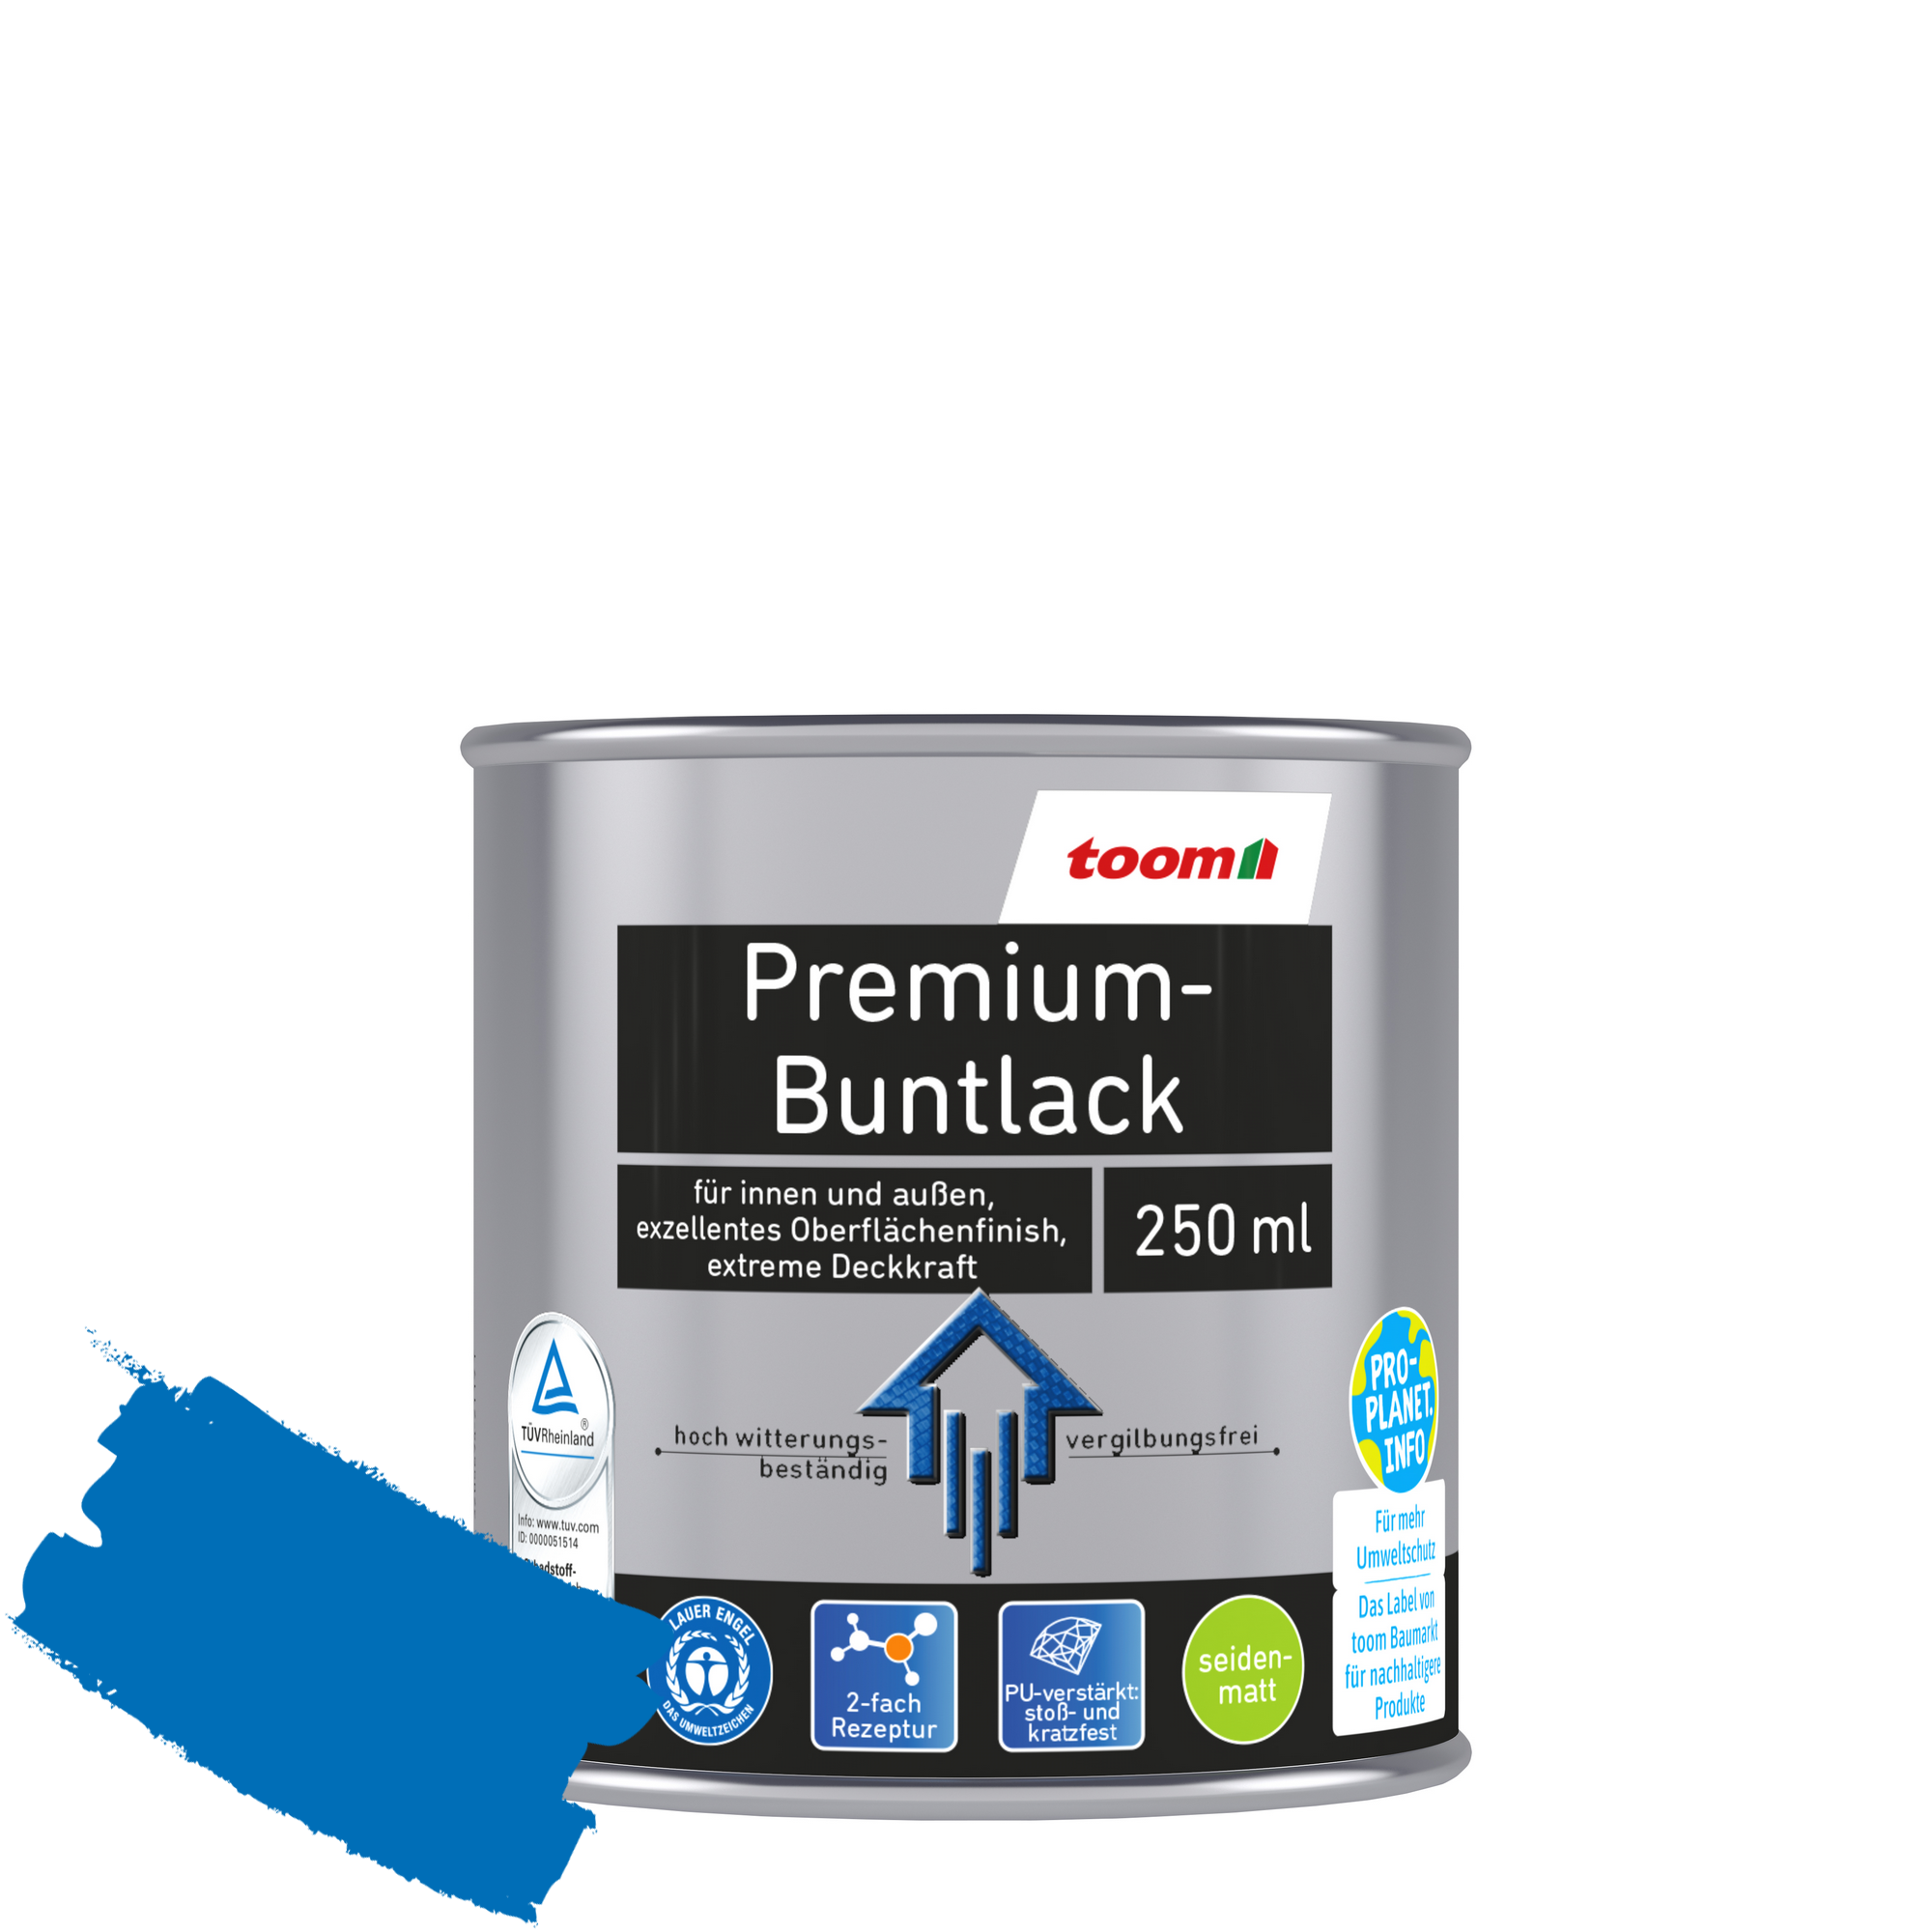 Premium-Buntlack pazifikblau seidenmatt 250 ml + product picture